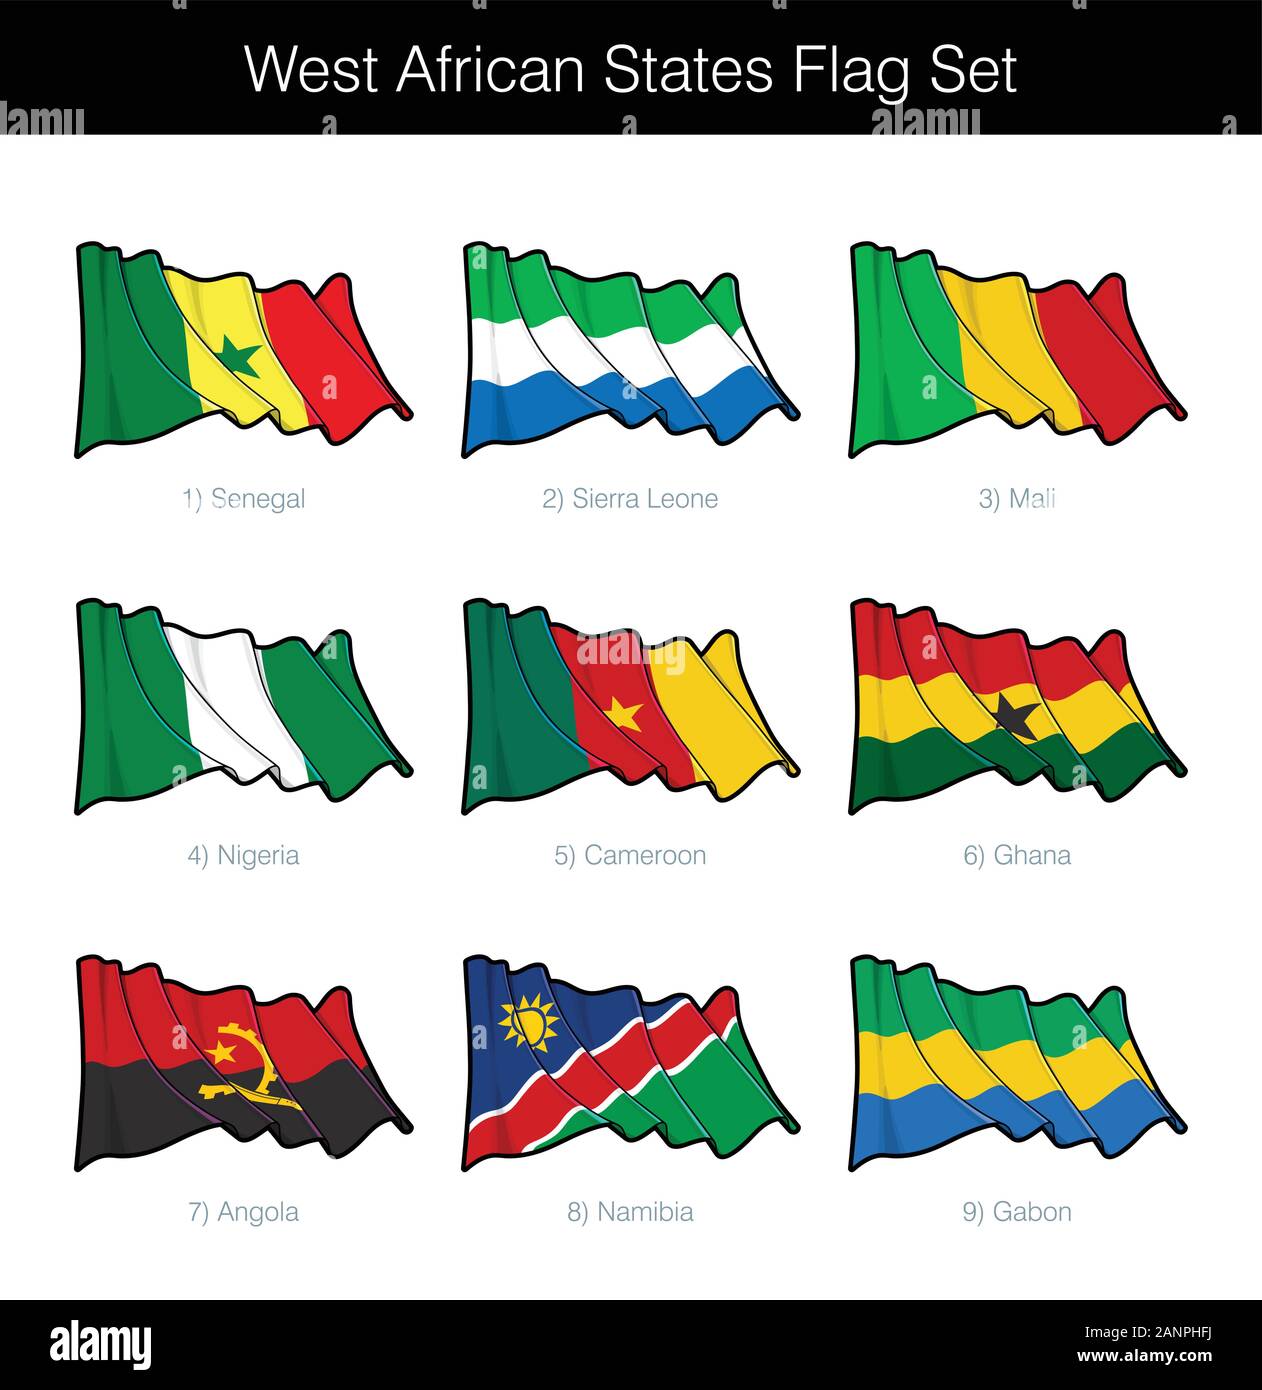 Westafrikanischen Staaten wehende Flagge gesetzt. Das Set beinhaltet die Flaggen von Senegal, Sierra Leone, Mali, Nigeria, Kamerun, Ghana, Angola, Namibia und Gabun. V Stock Vektor